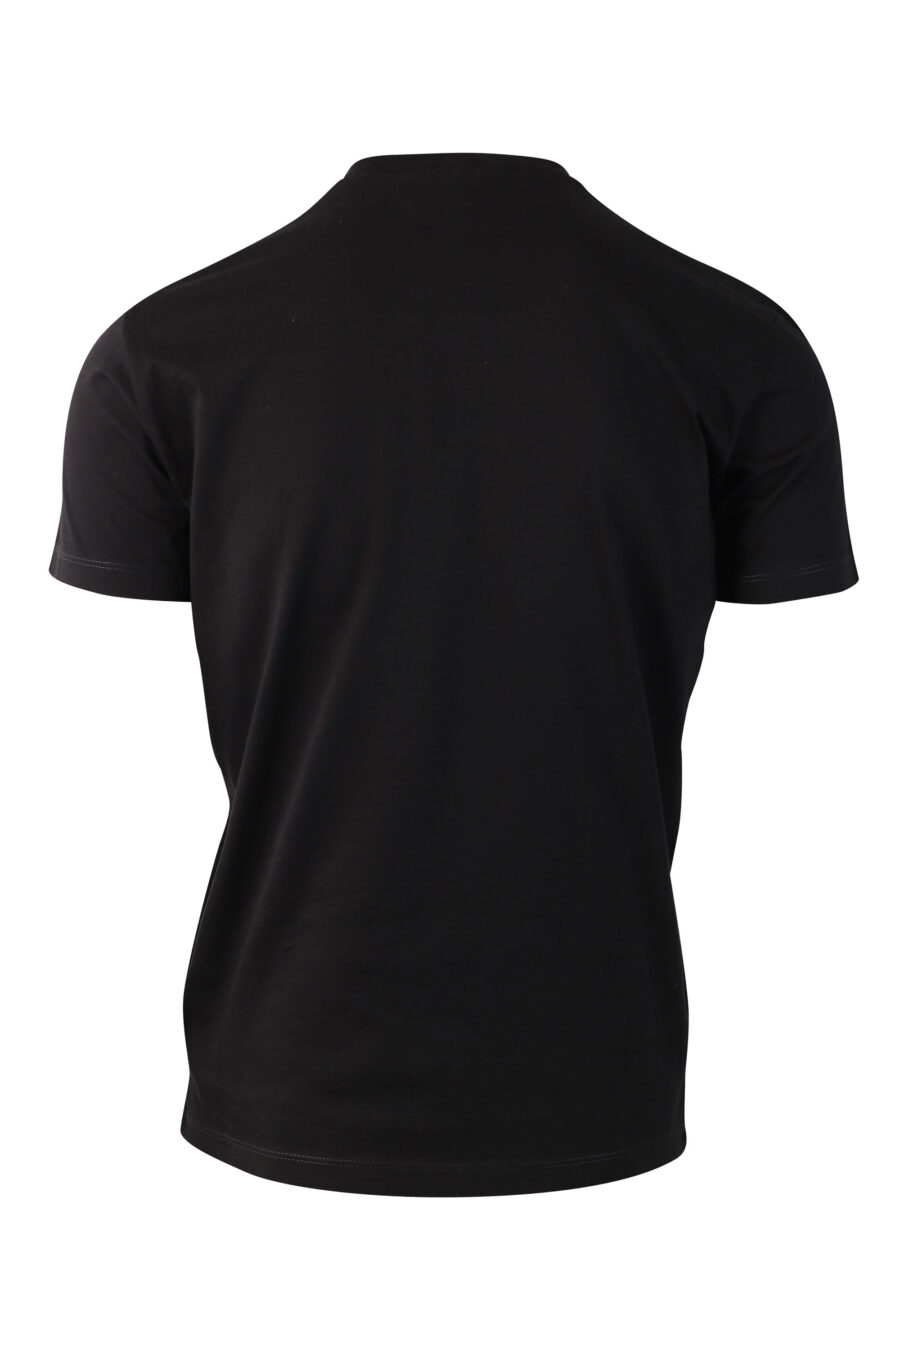 T-shirt preta com minilogo - IMG 9996